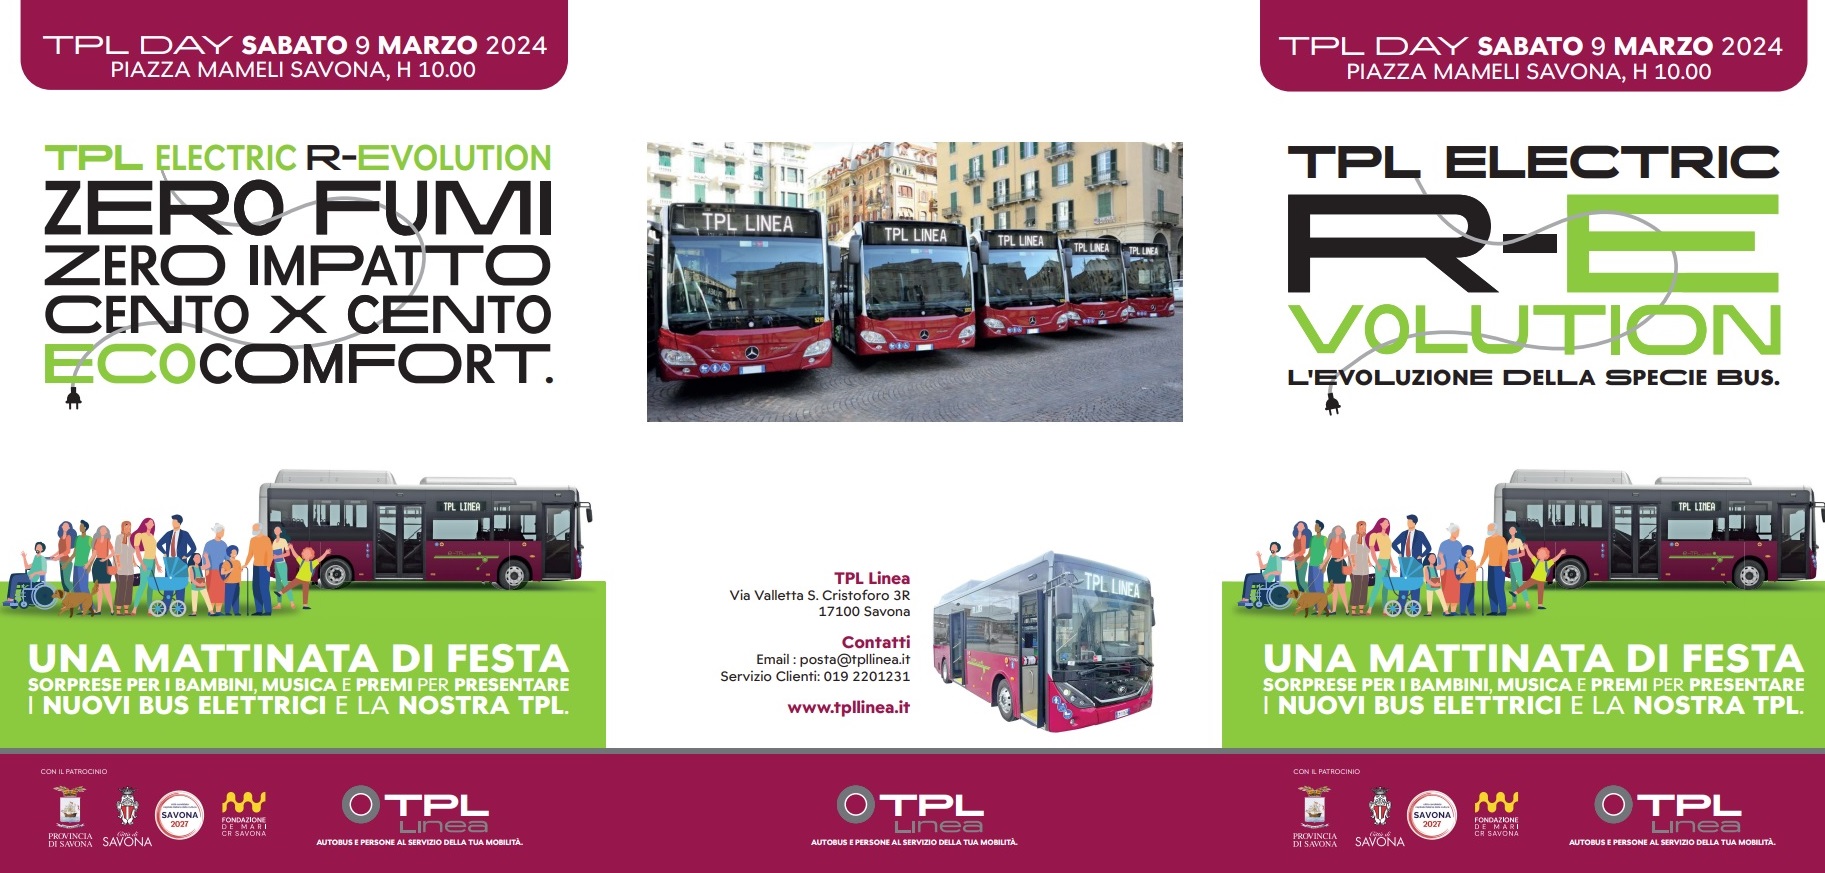 TPL DAY “R-evolution – L’evoluzione delle specie bus”: la presentazione dei primi 14 bus elettrici per il trasporto pubblico locale di Savona